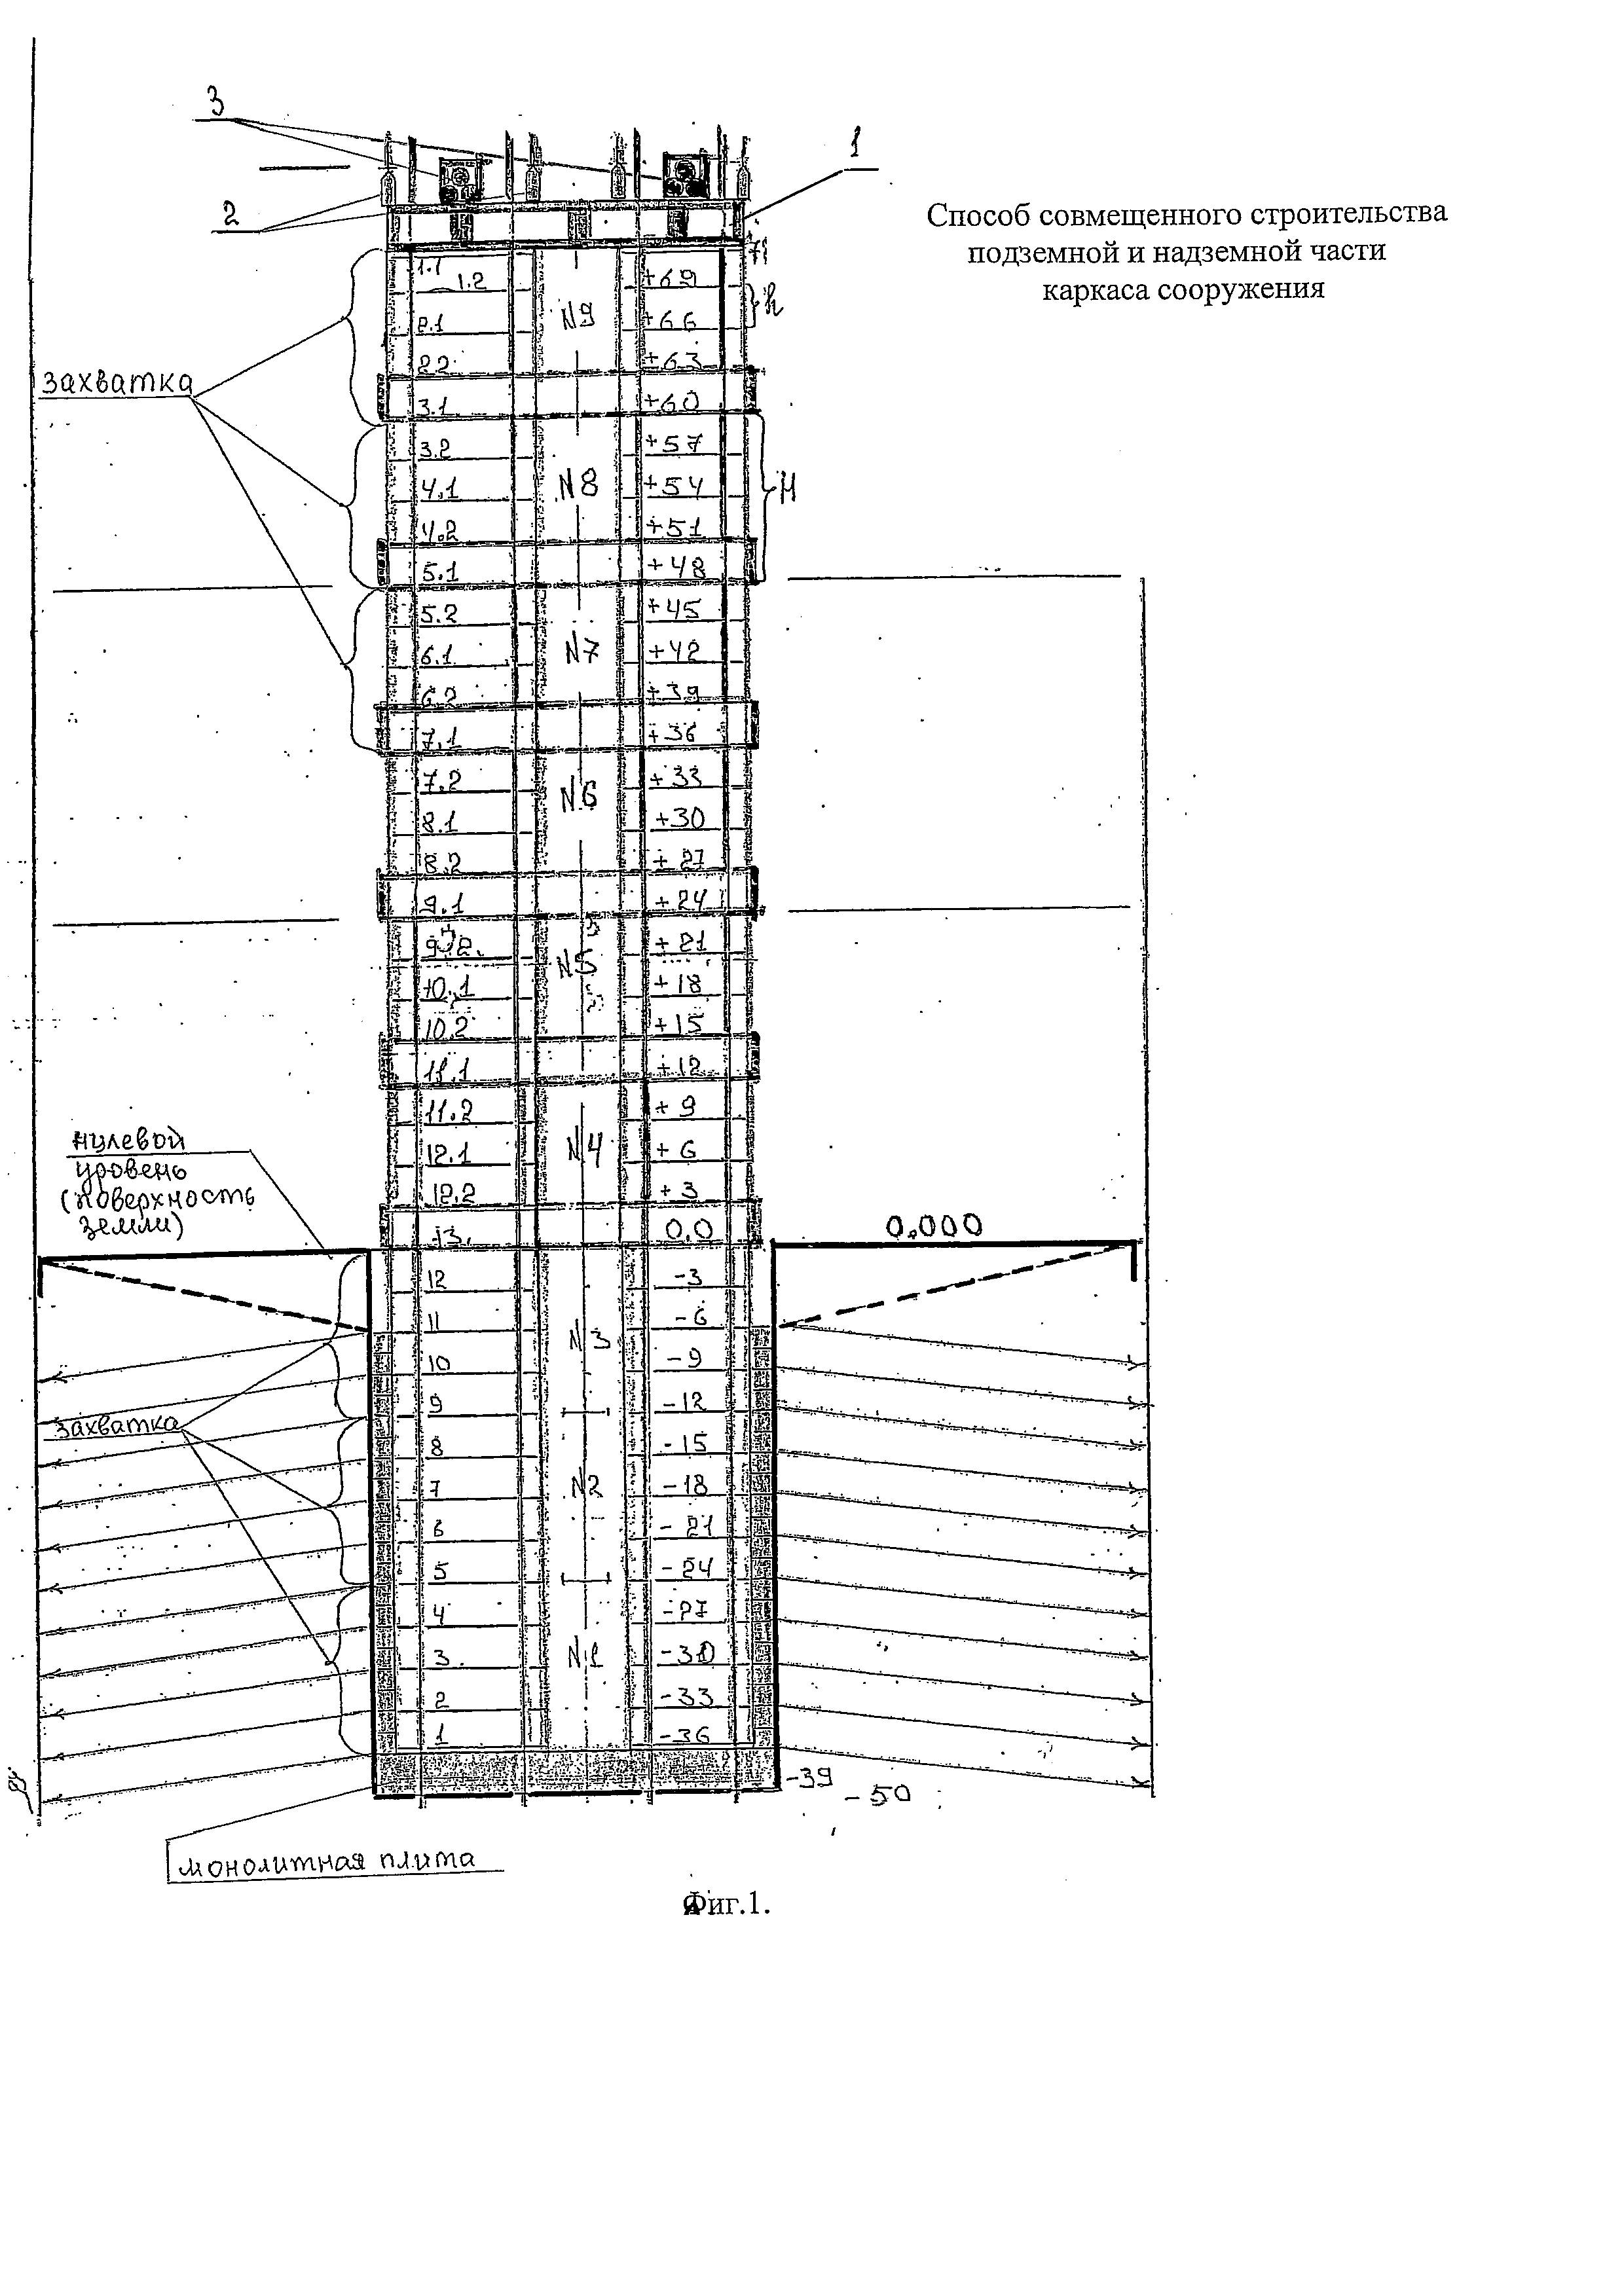 Способ совмещенного строительства подземной и надземной части каркаса сооружения